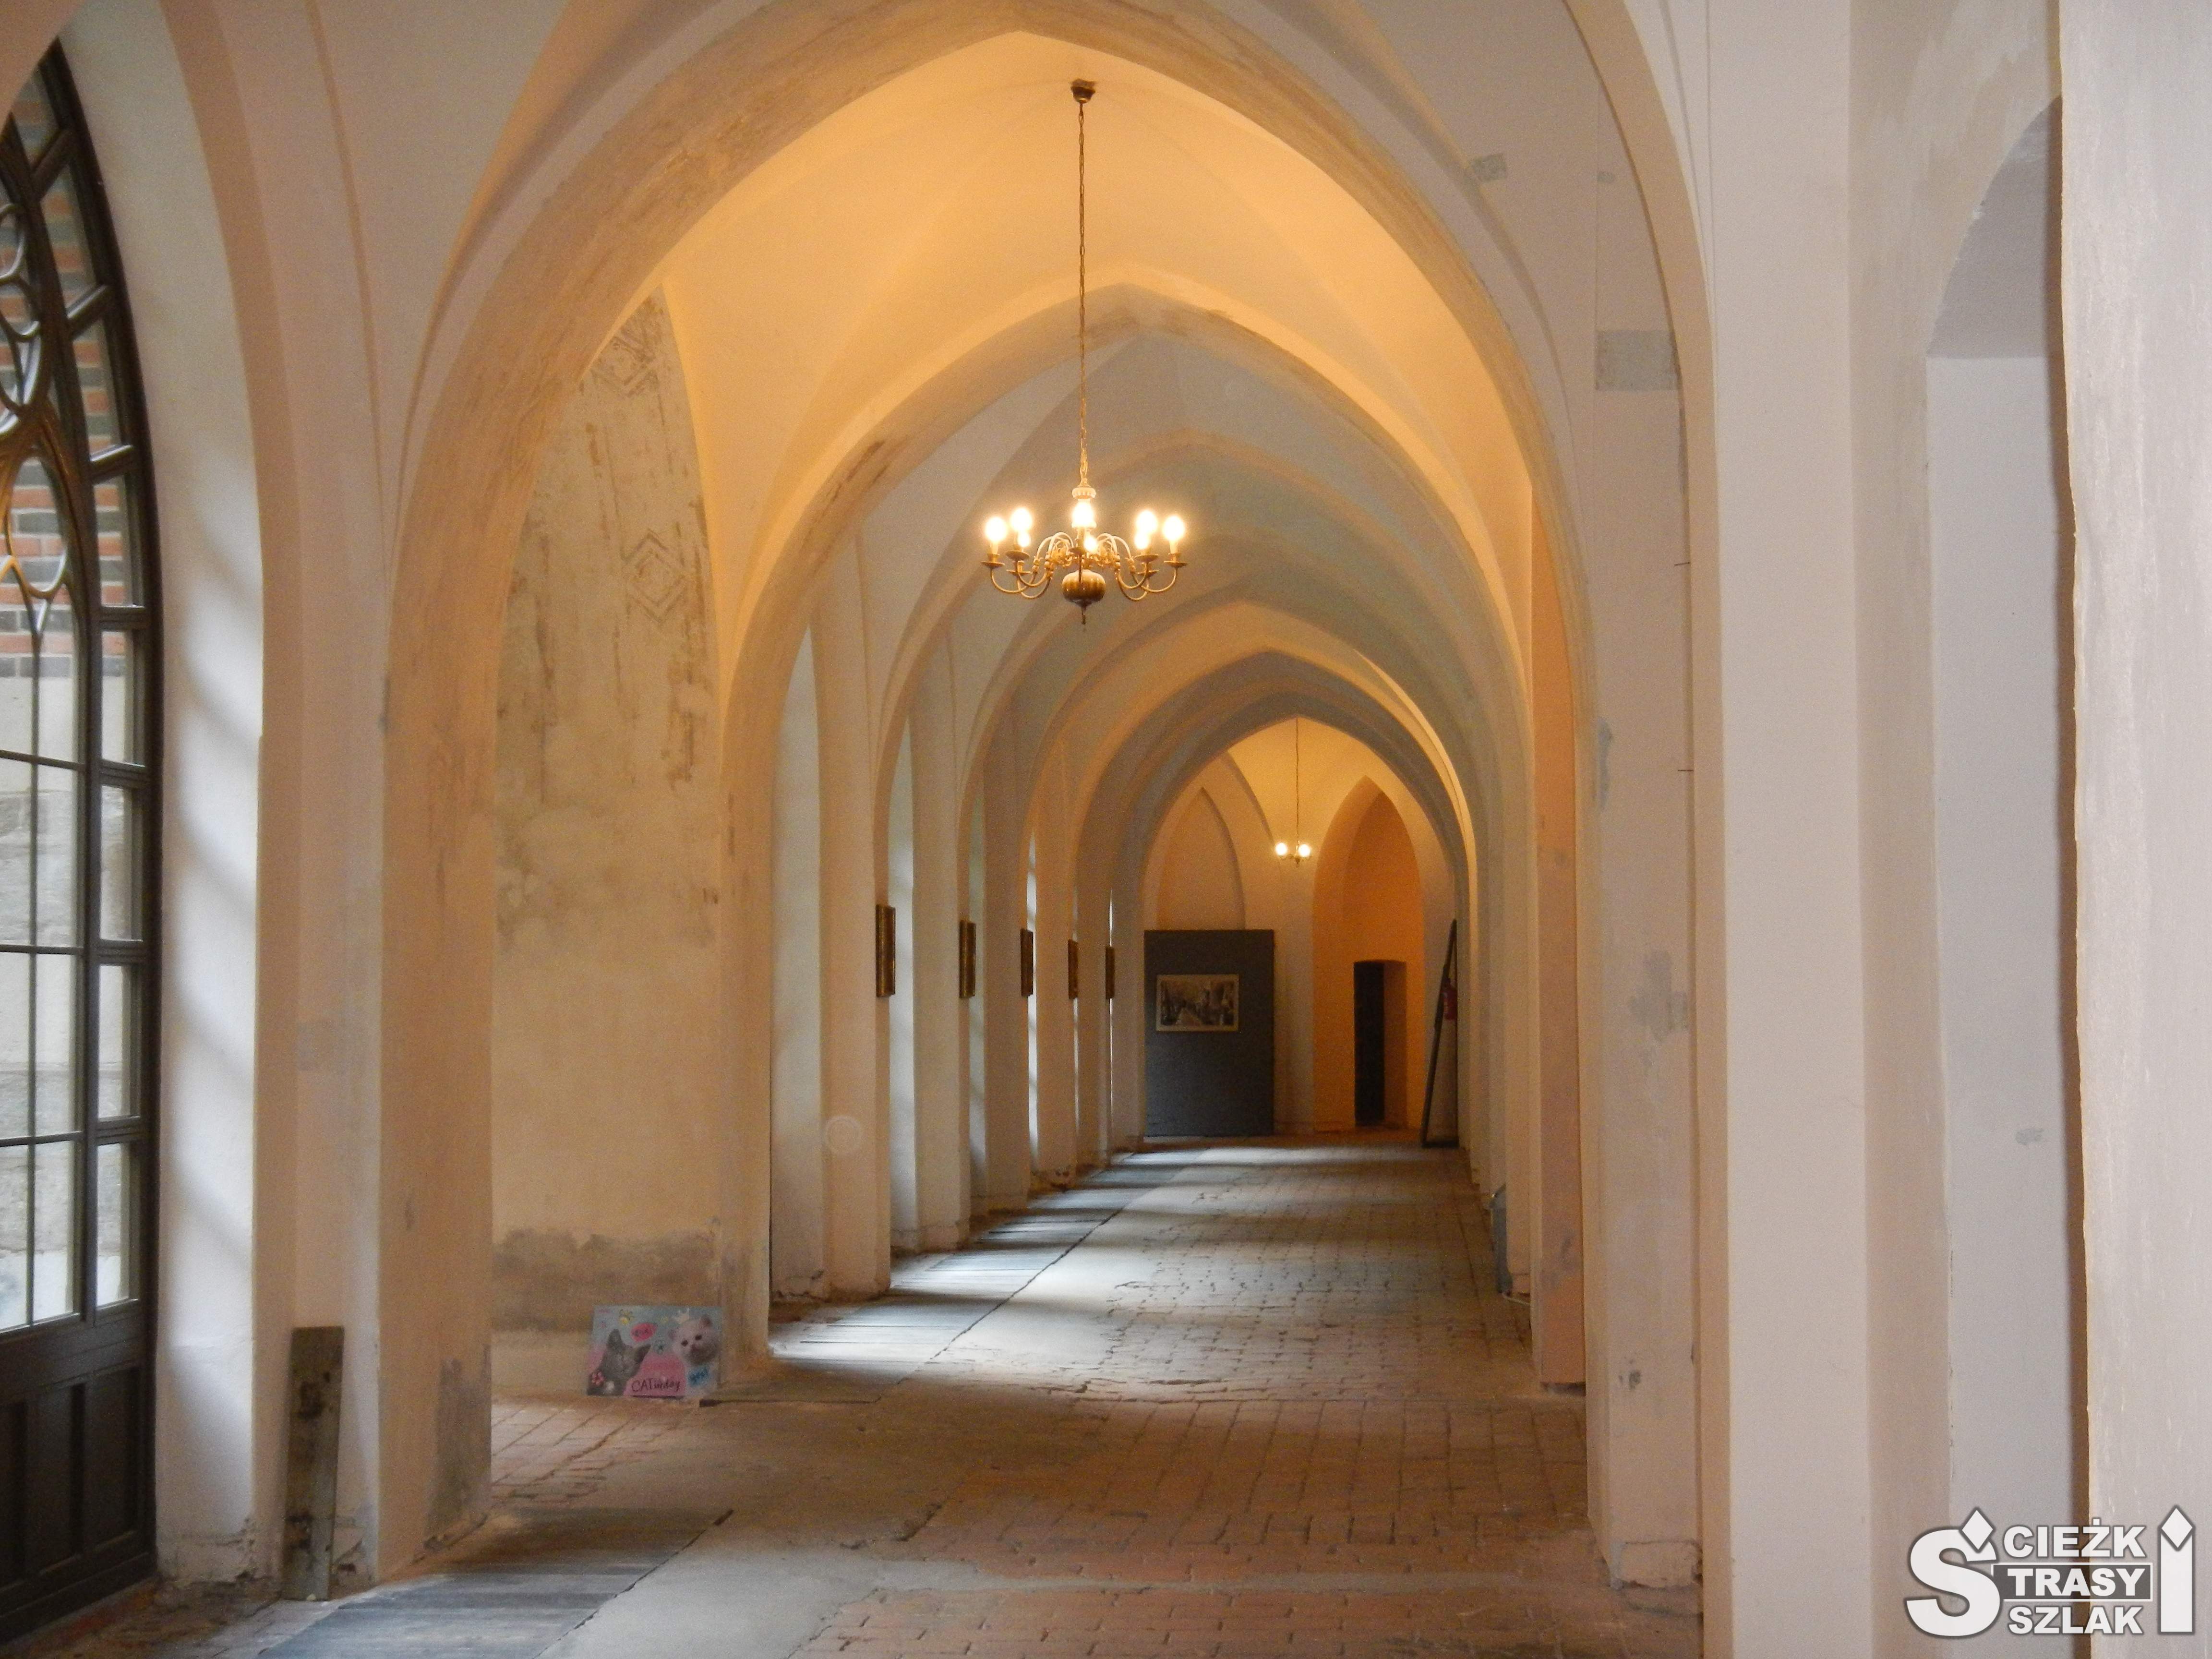 Łukowe sklepienia pokryte jasnym tynkiem tworzące długi korytarz w środku Pałacu Marianny Orańskiej